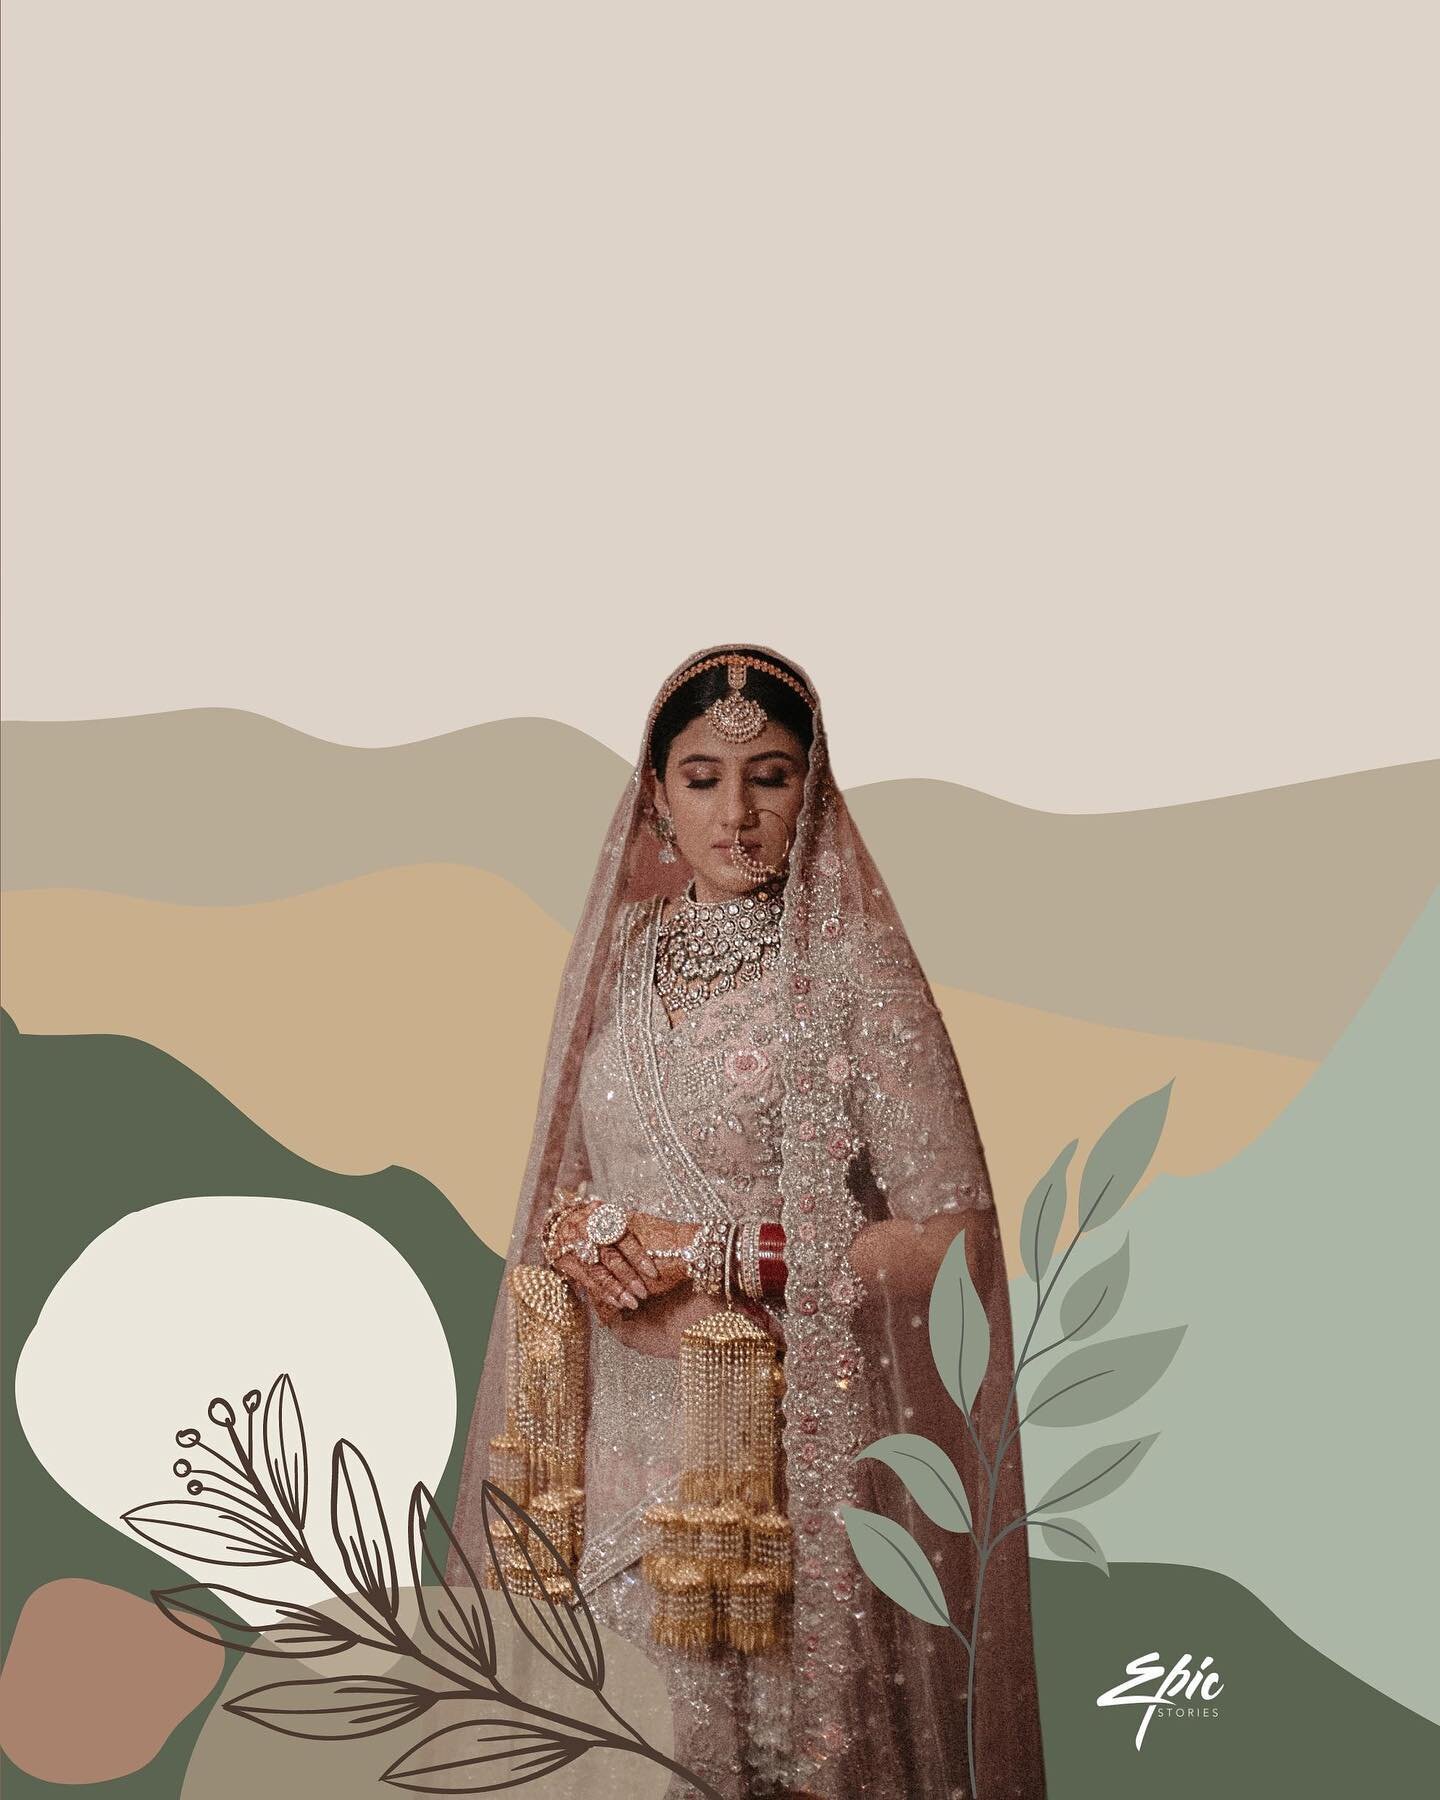 Srishti ~
- #BridalPortrait #indianwedding #indianbride